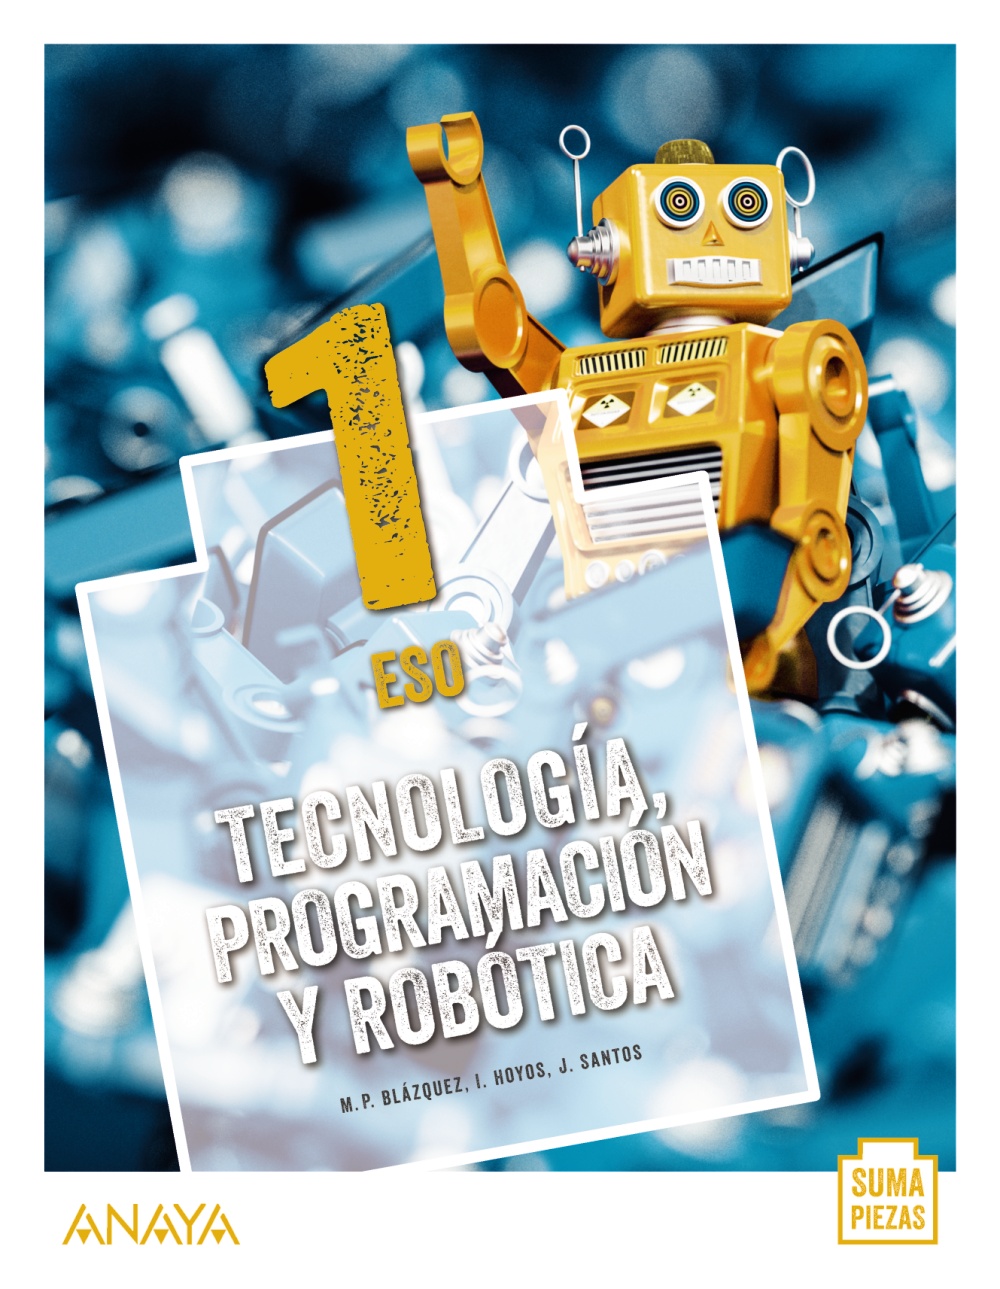 Solucionario Tecnologia Programacion y Robotica 1 ESO Anaya Suma Piezas PDF Ejercicios Resueltos-pdf